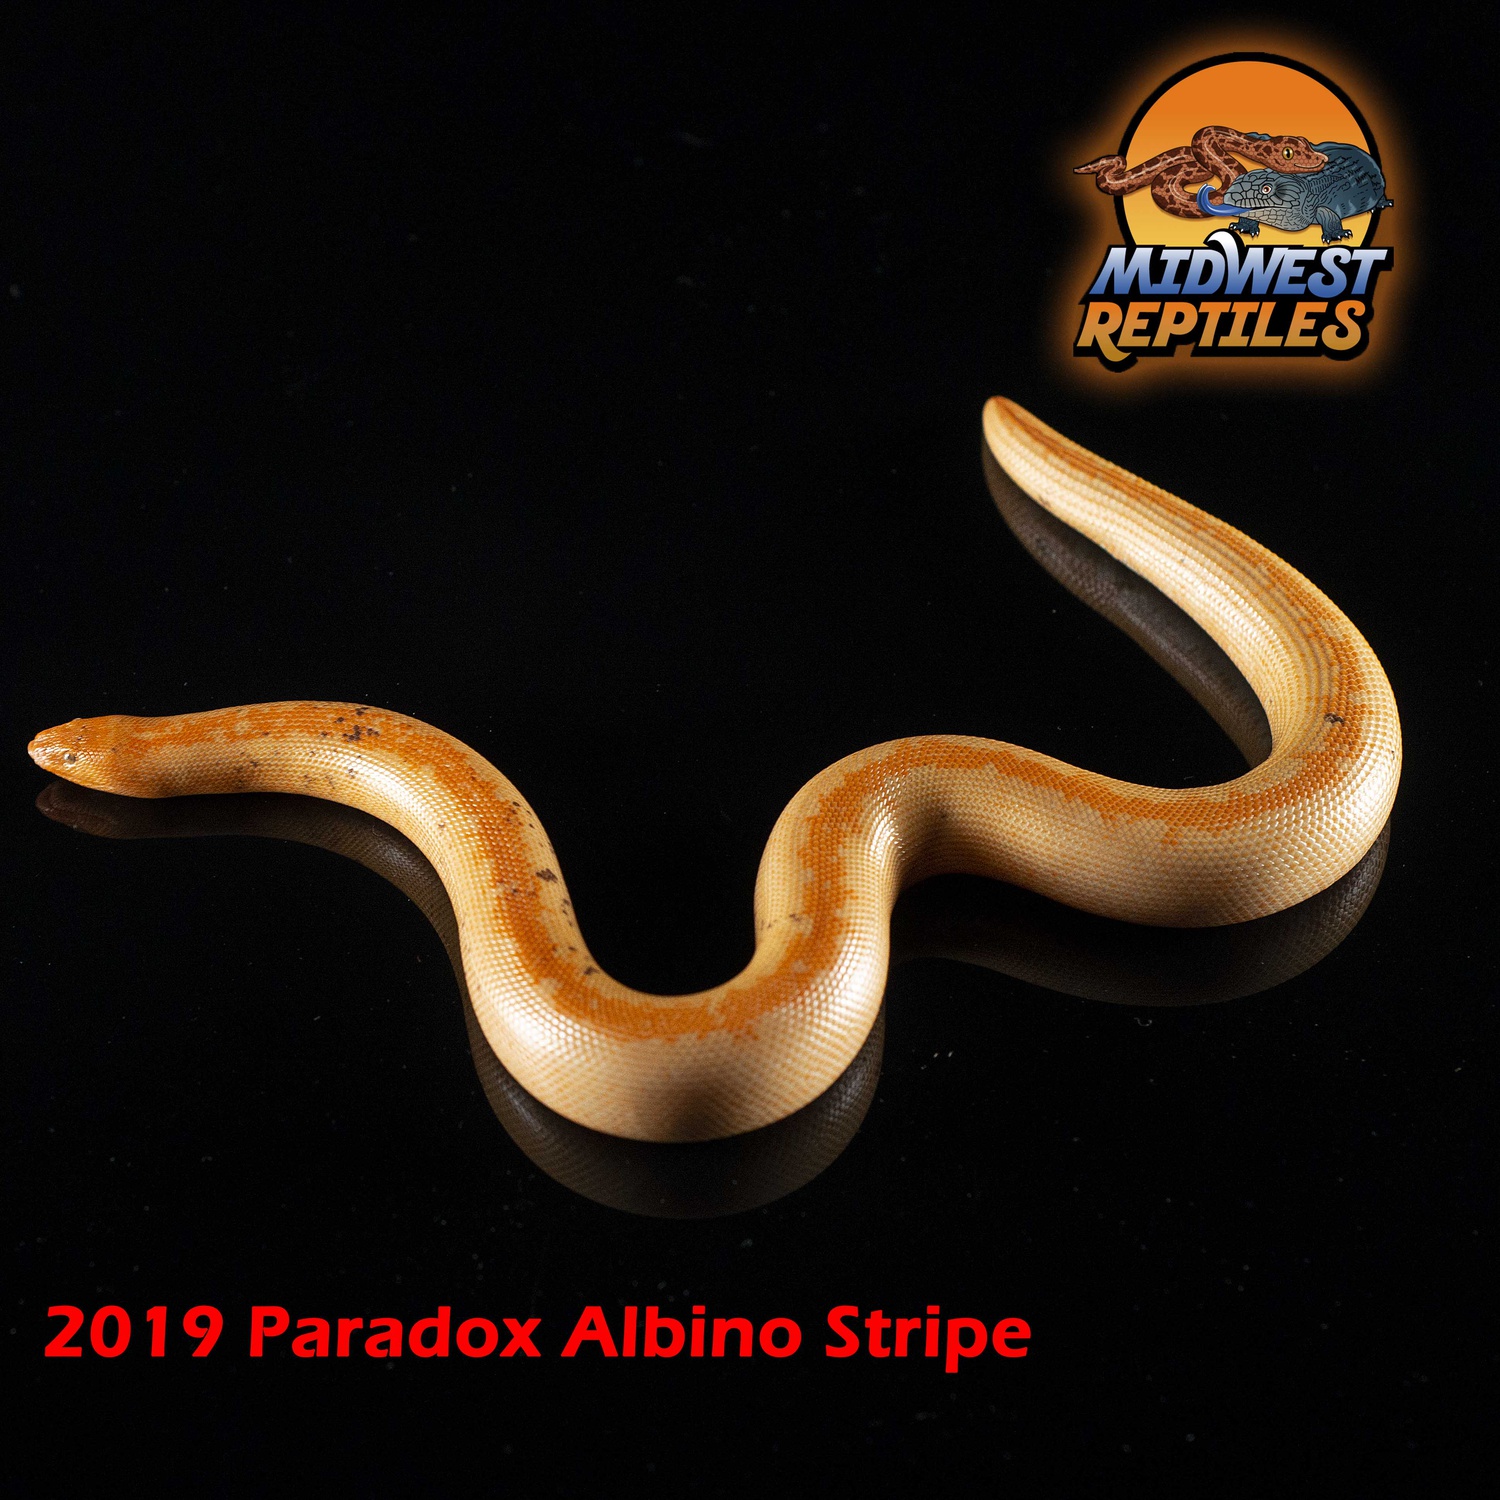 2019 Paradox Albino Stripe Male #1 Sand Boa by Midwest Reptiles